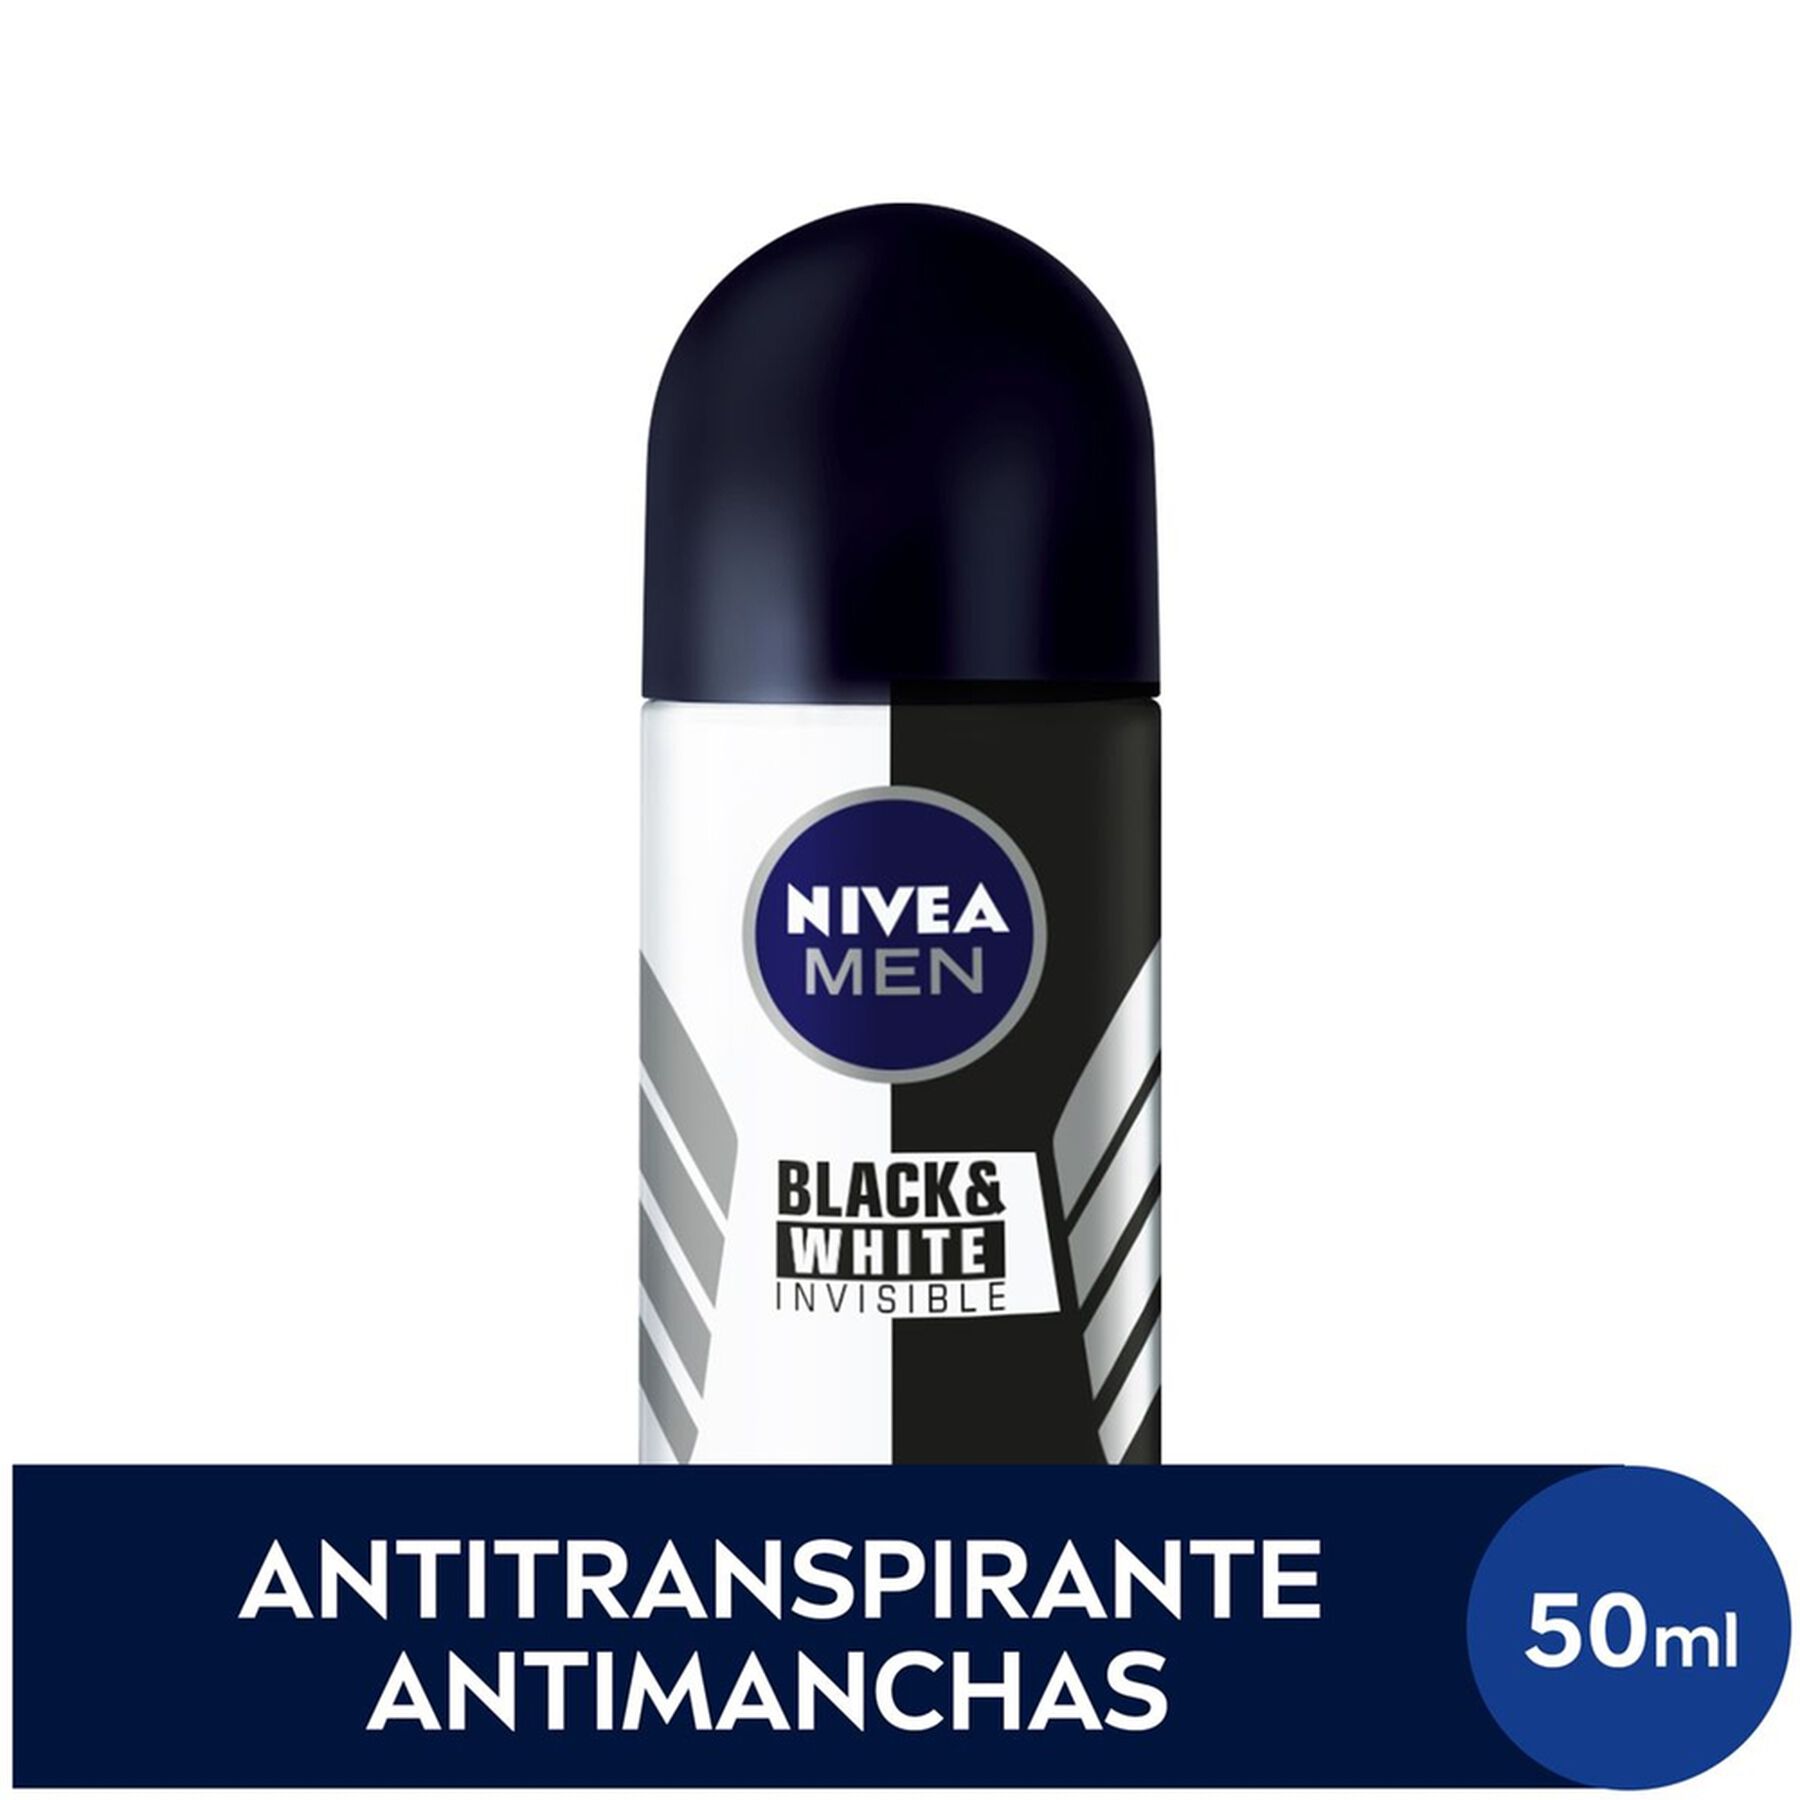 Antitranspirante Roll-On Nivea Men Invisible for Black & White 50ml